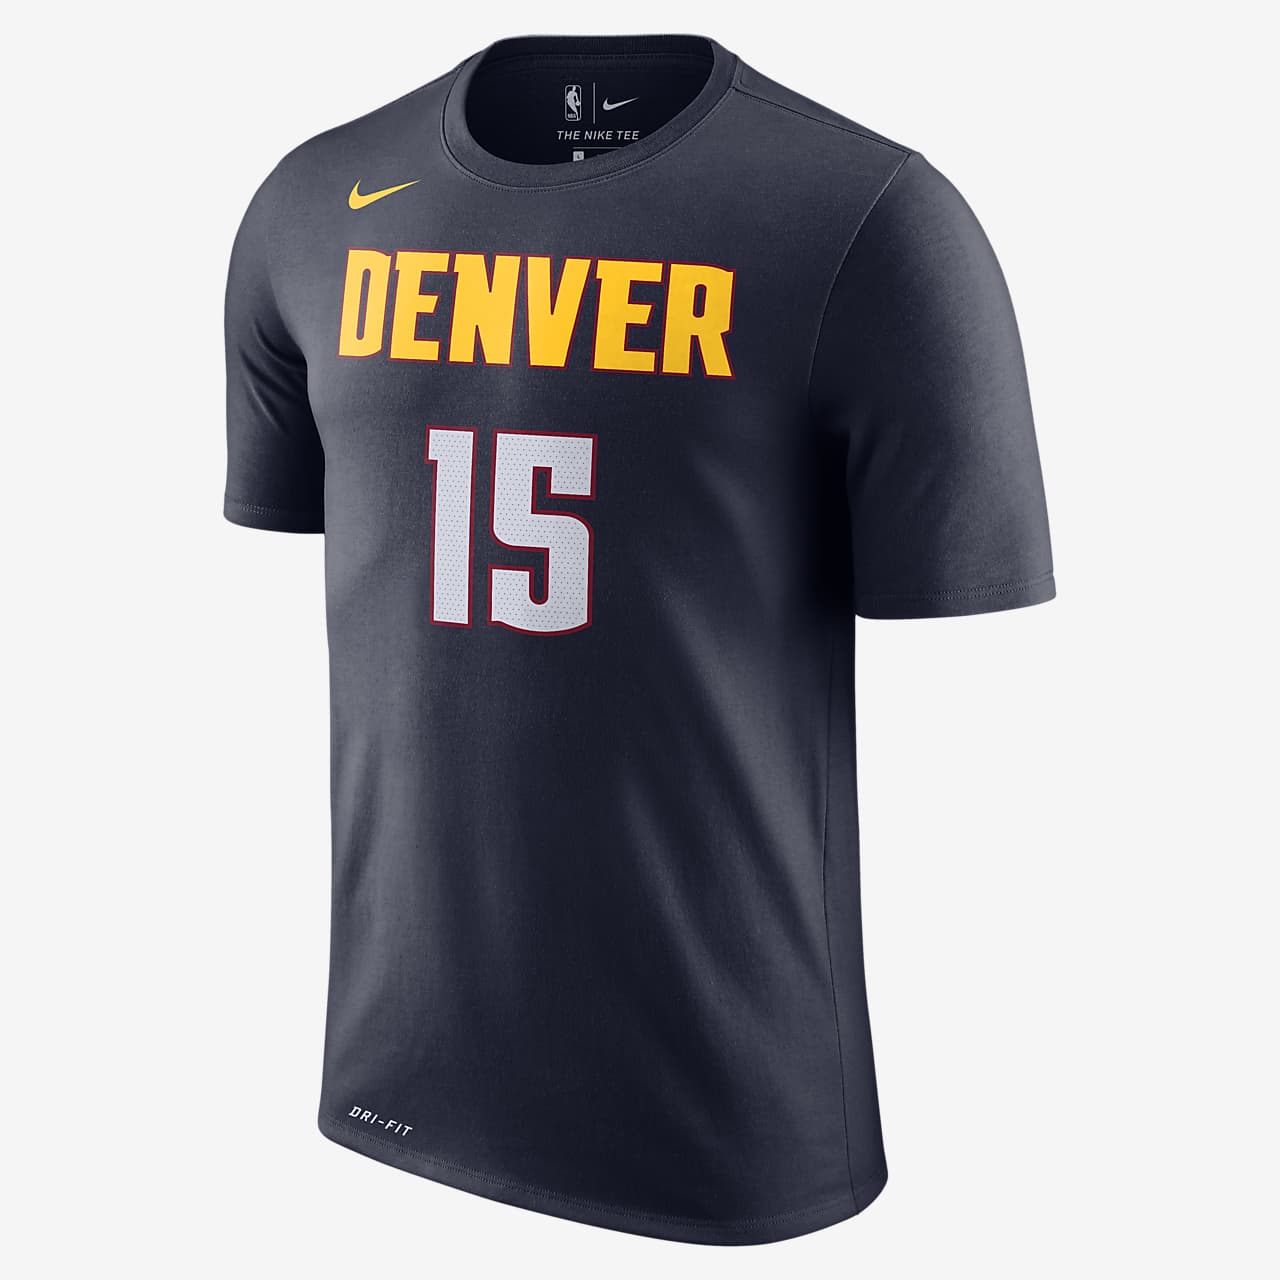 Playera Nike Dri-Fit de la NBA para hombre Denver Nuggets